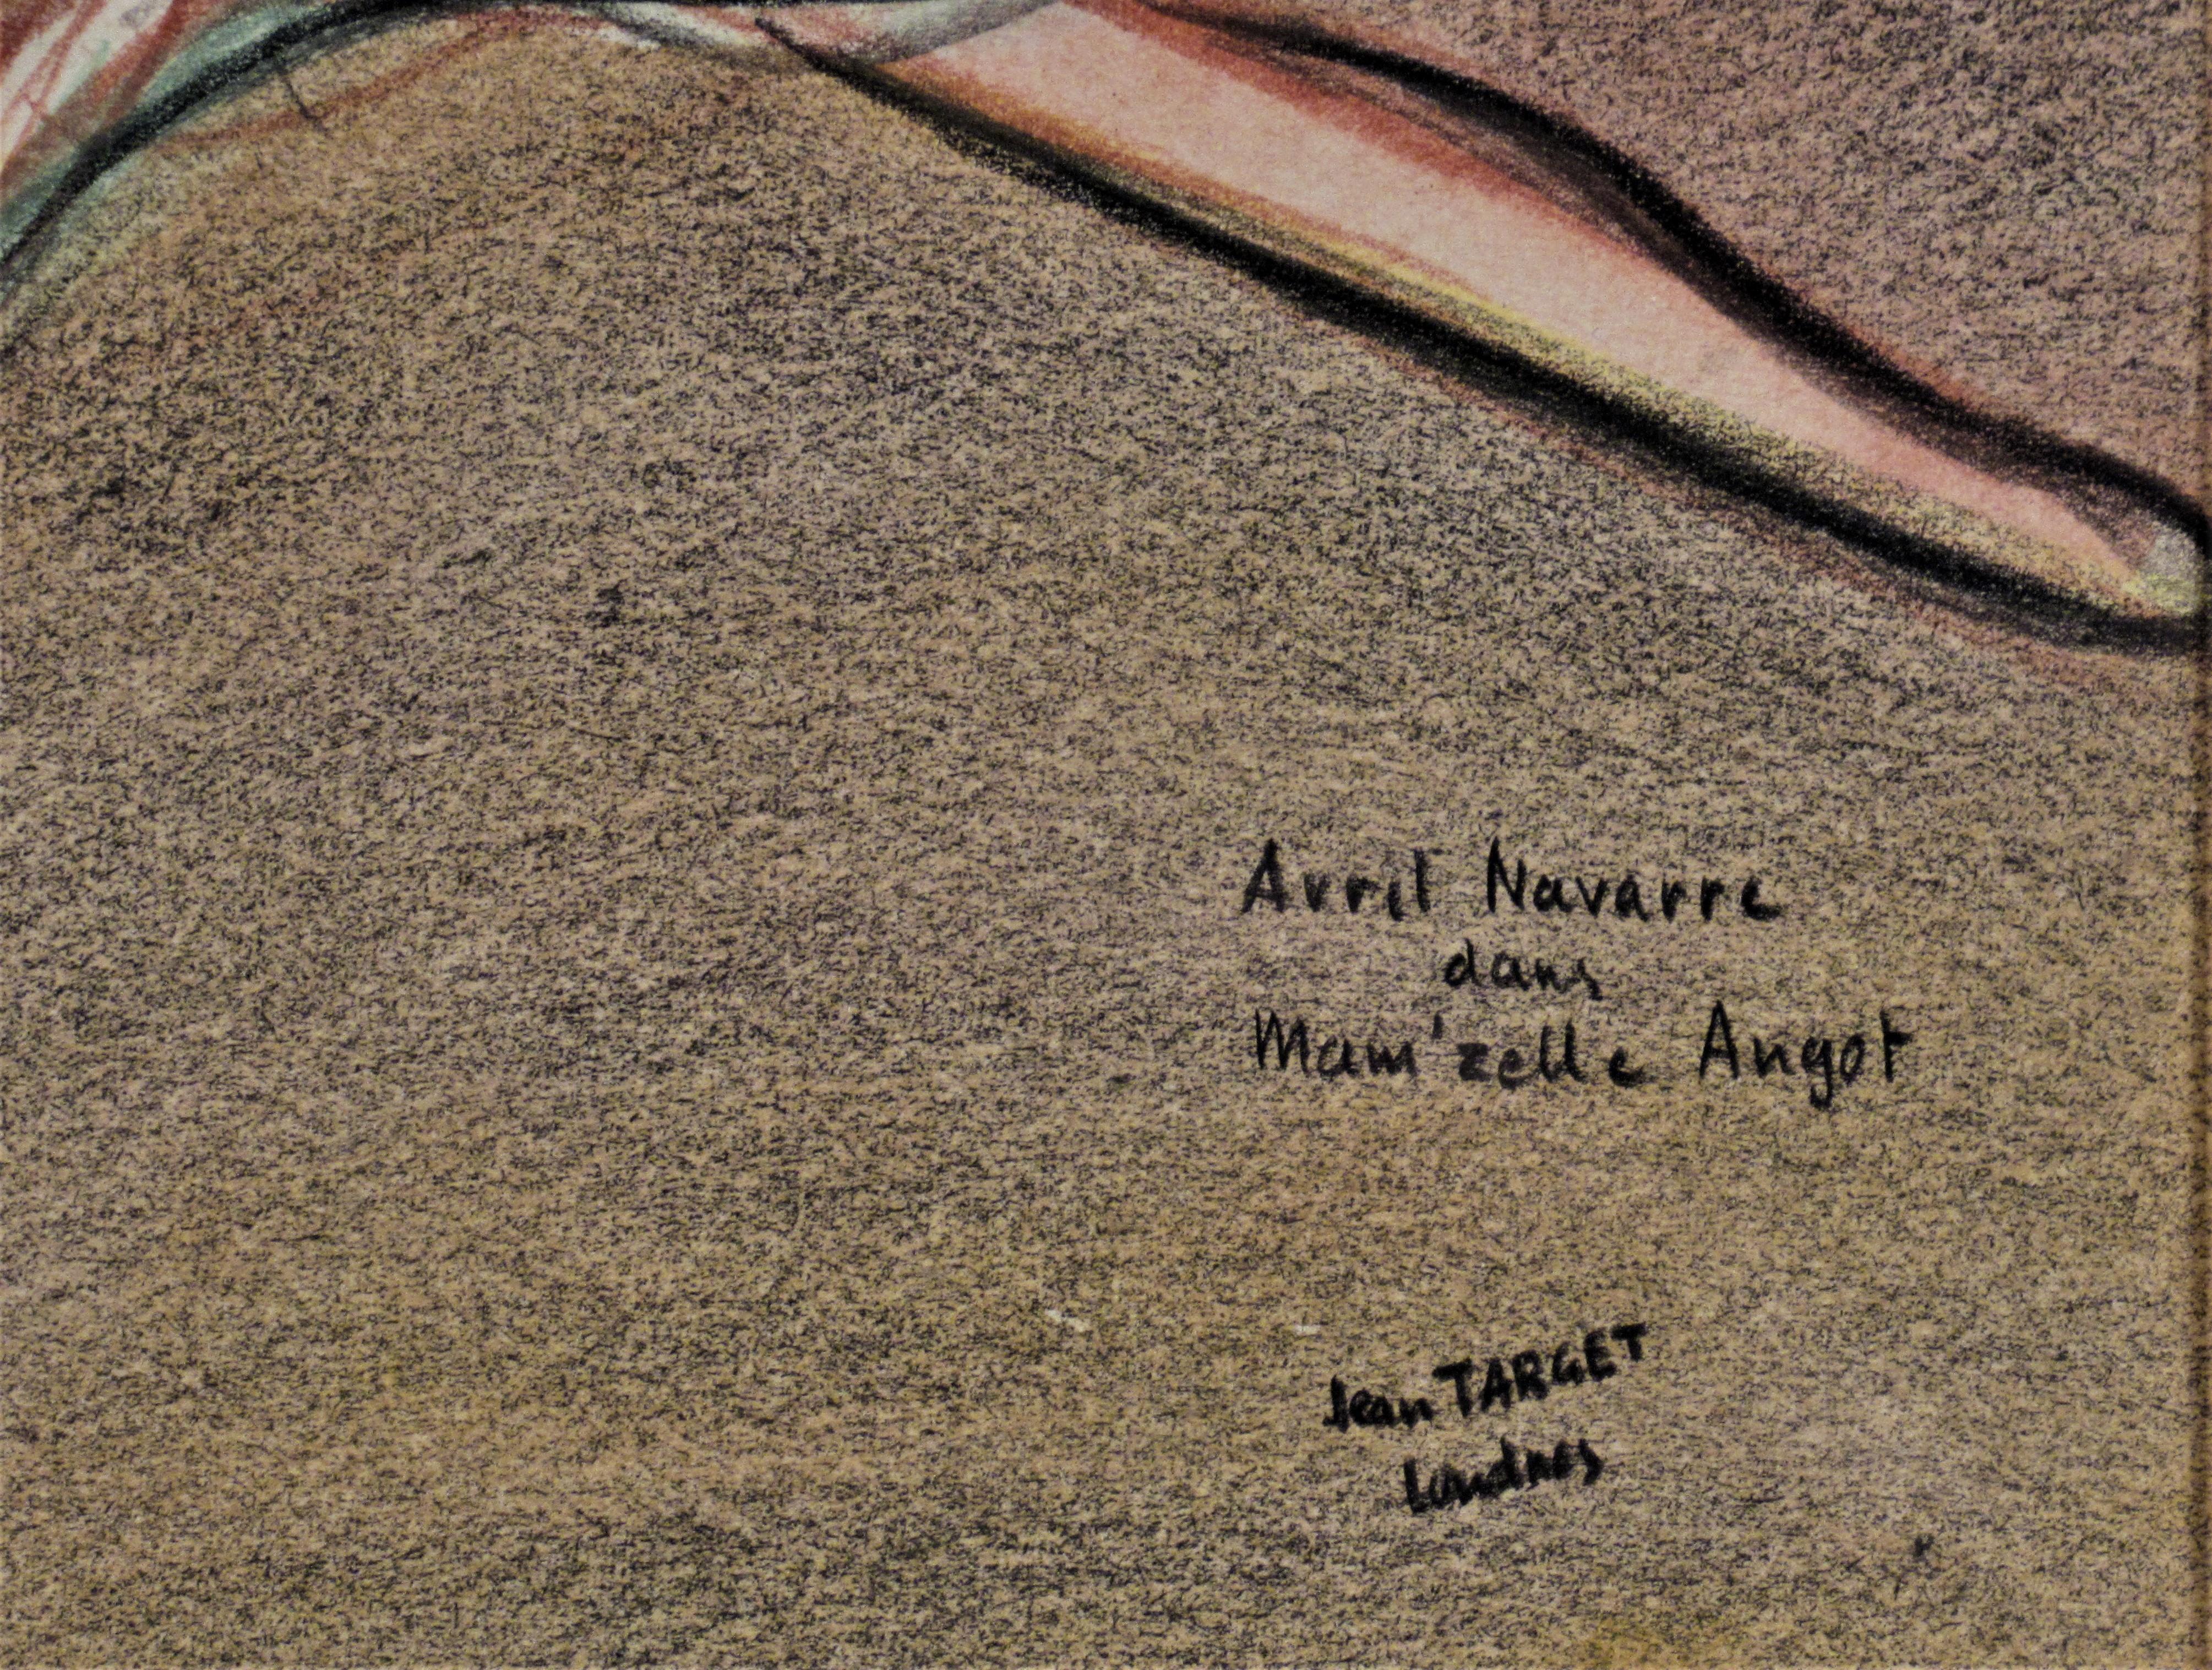 Avril Navarre, Dans Mam, zelle Angot - Marron Figurative Art par Jean Target